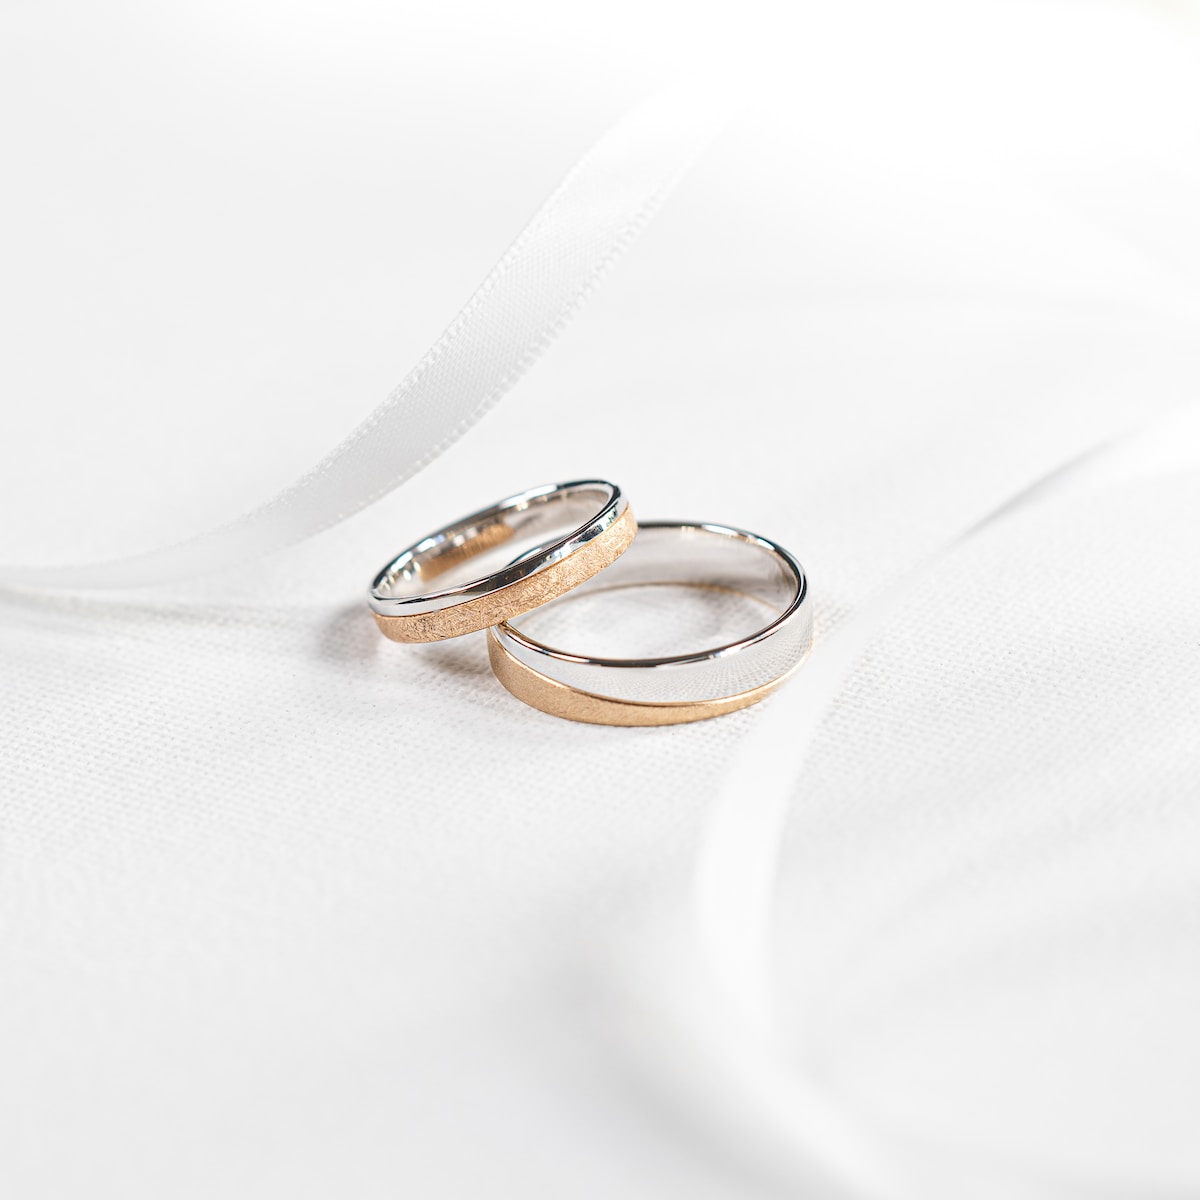 deux bagues mariage posées sur un tissu blanc